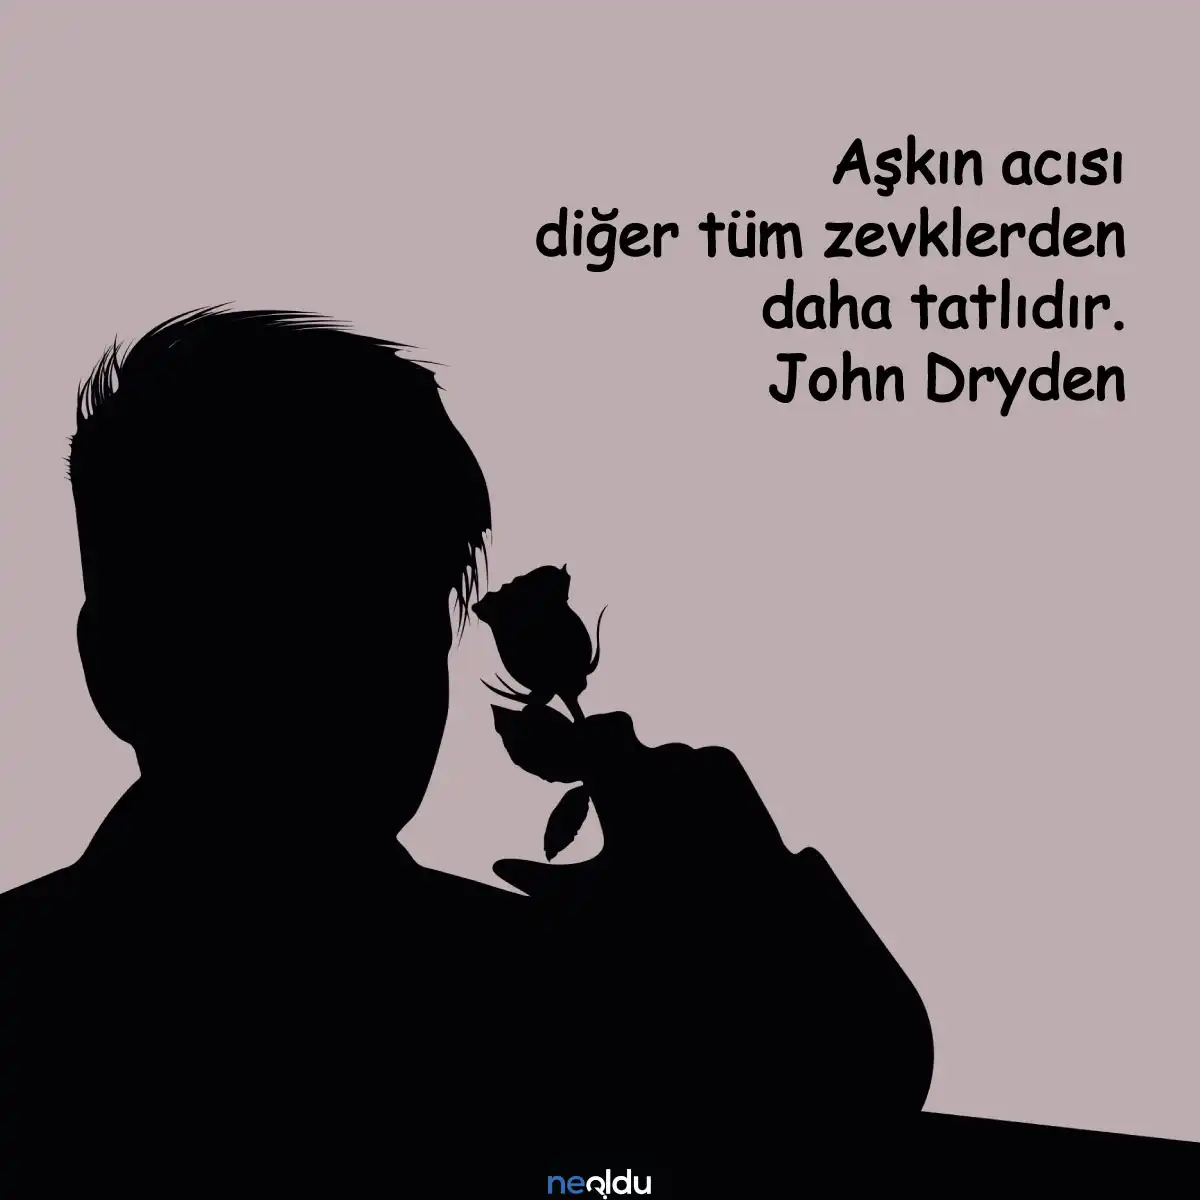 Aşkın acısı diğer tüm zevklerden daha tatlıdır. John Dryden